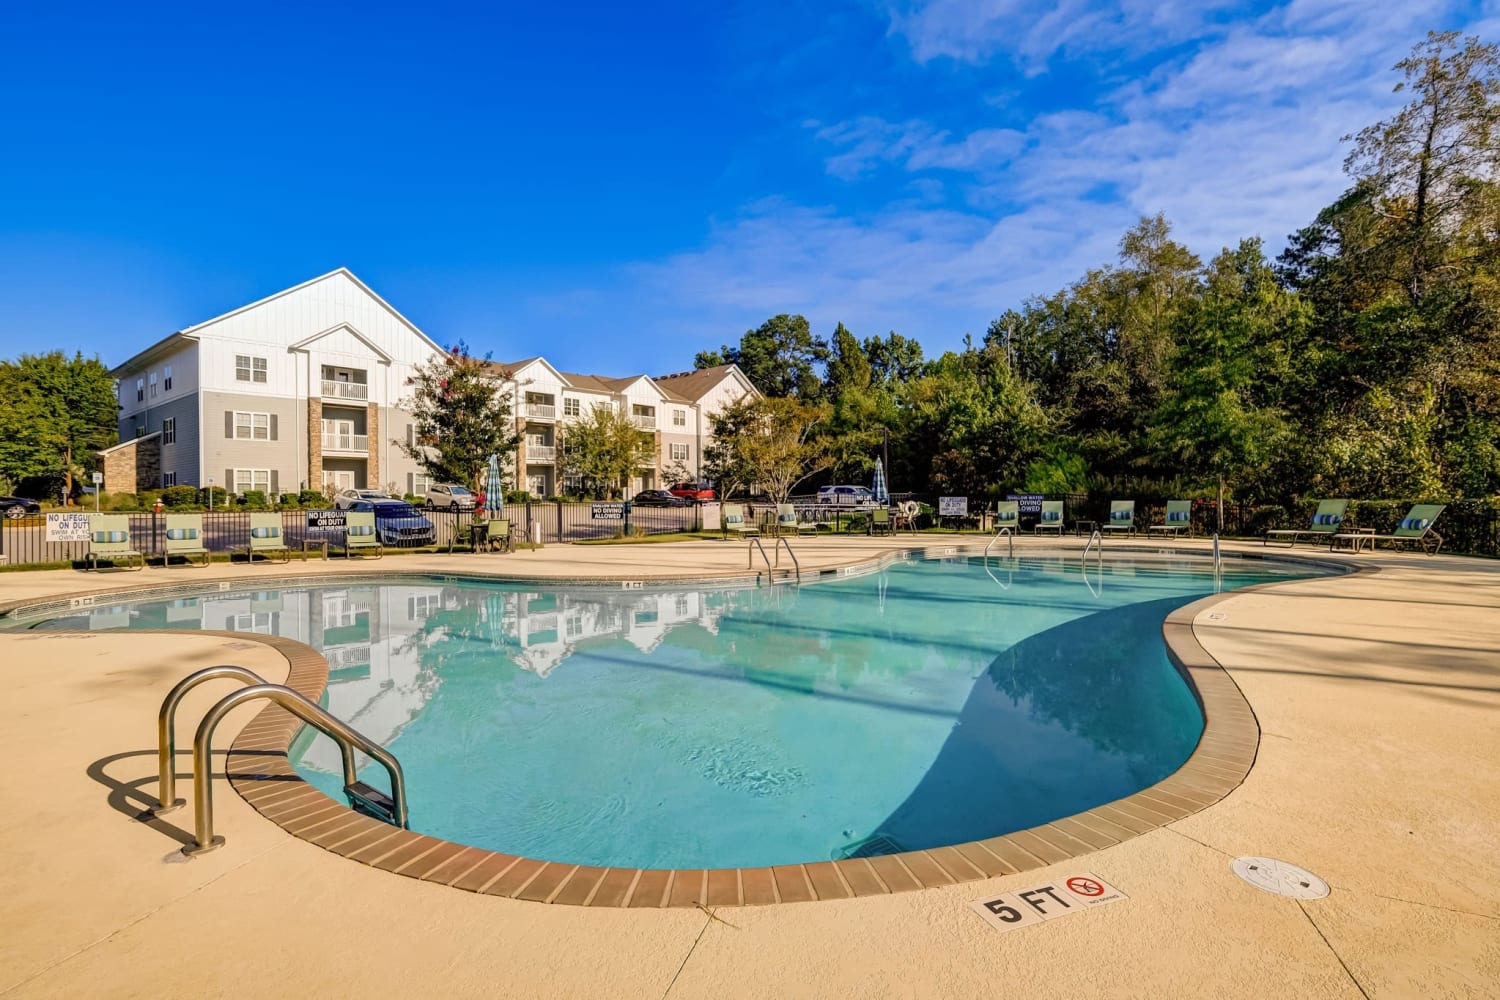 Swimming pool at Creekside at Greenlawn Apartment Homes in Columbia, South Carolina